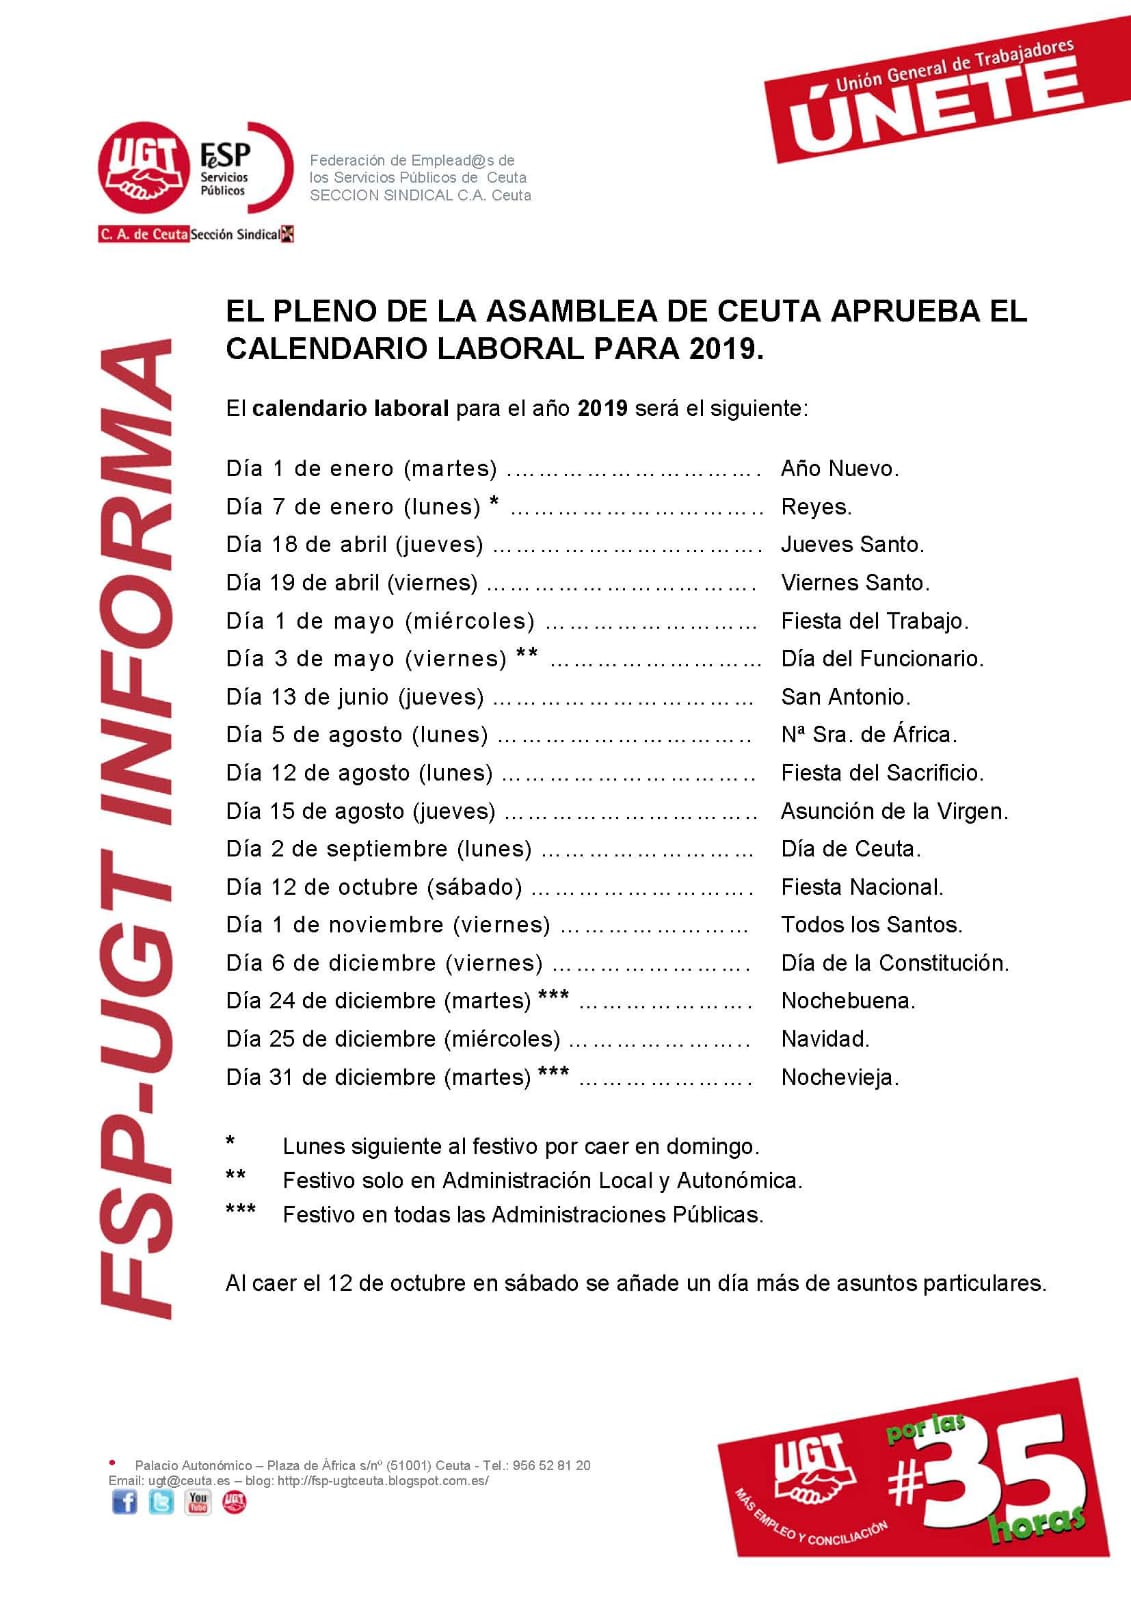 El Pleno de la Asamblea de Ceuta aprueba el Calendario Laboral para 2019